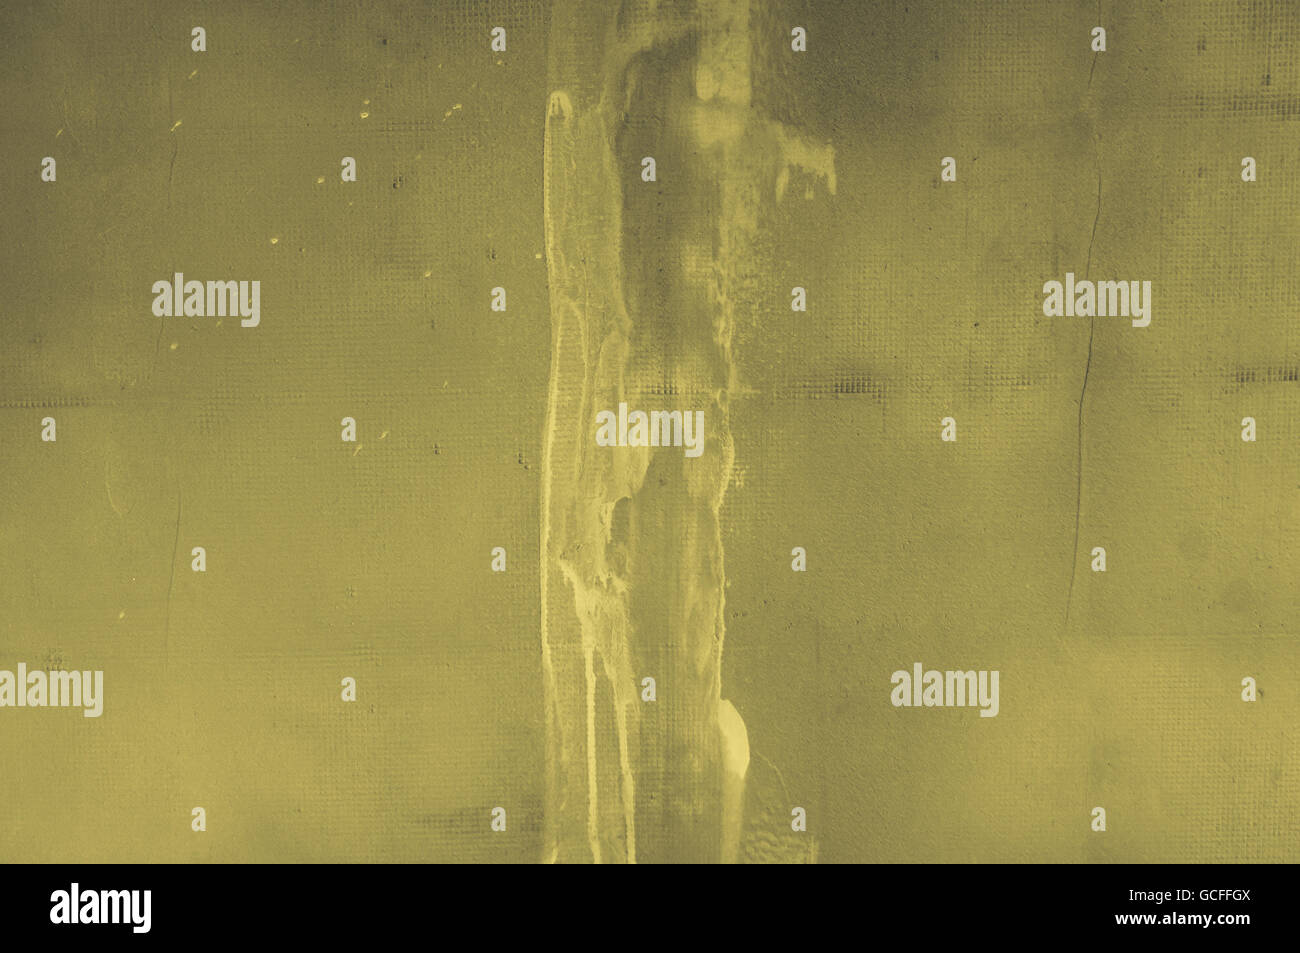 Gris Jaune mur jaunâtre avec fond de stuc béton rugueux , parure avec matrix comme grille de points et des rayures Banque D'Images